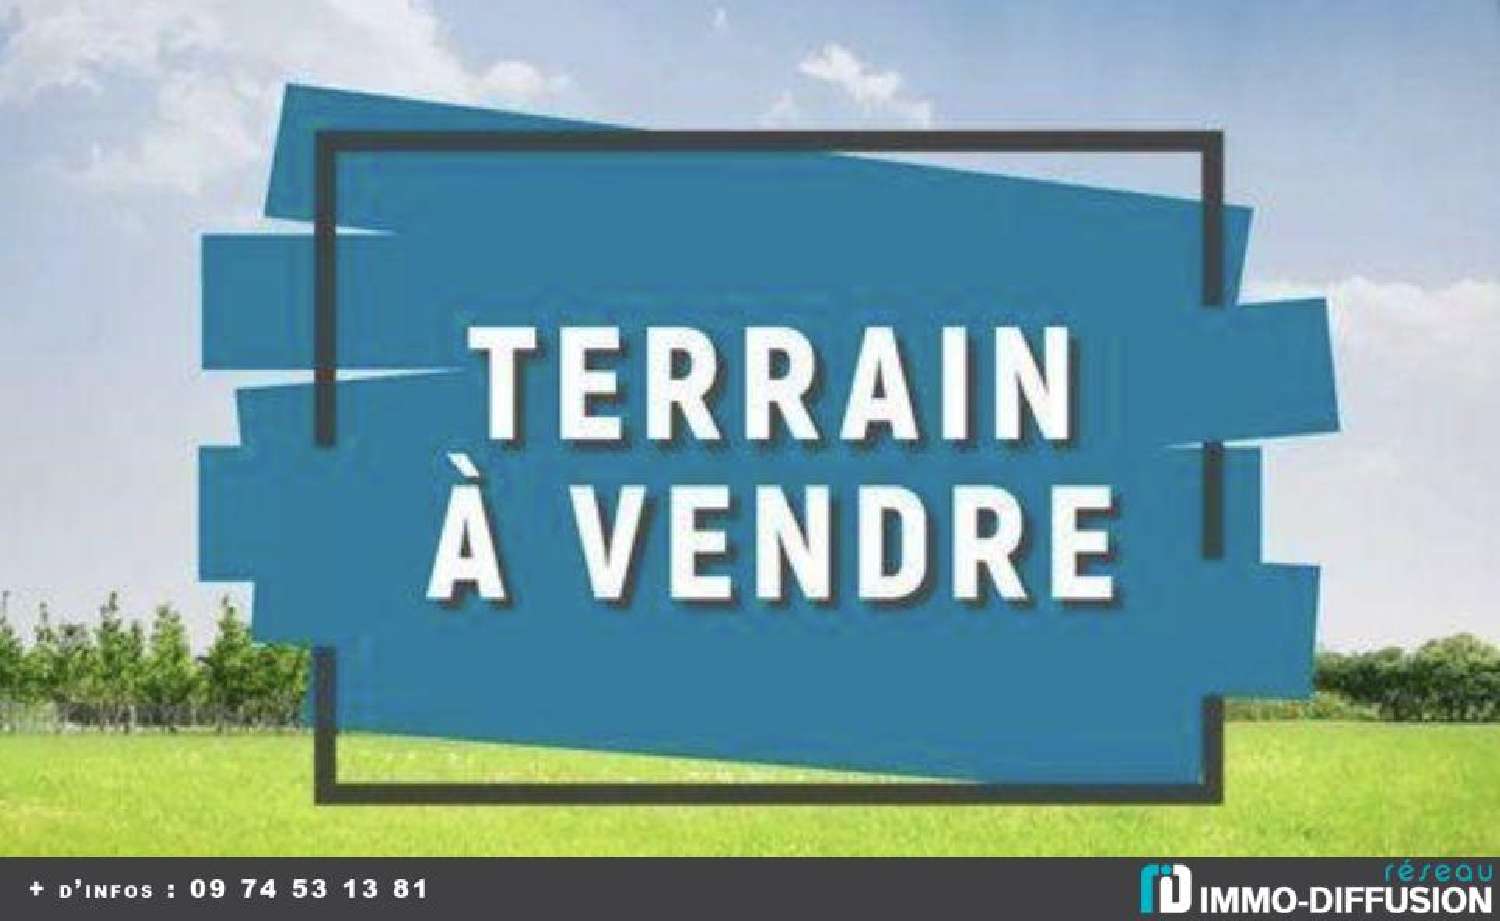  for sale terrain La Ferrière Vendée 1